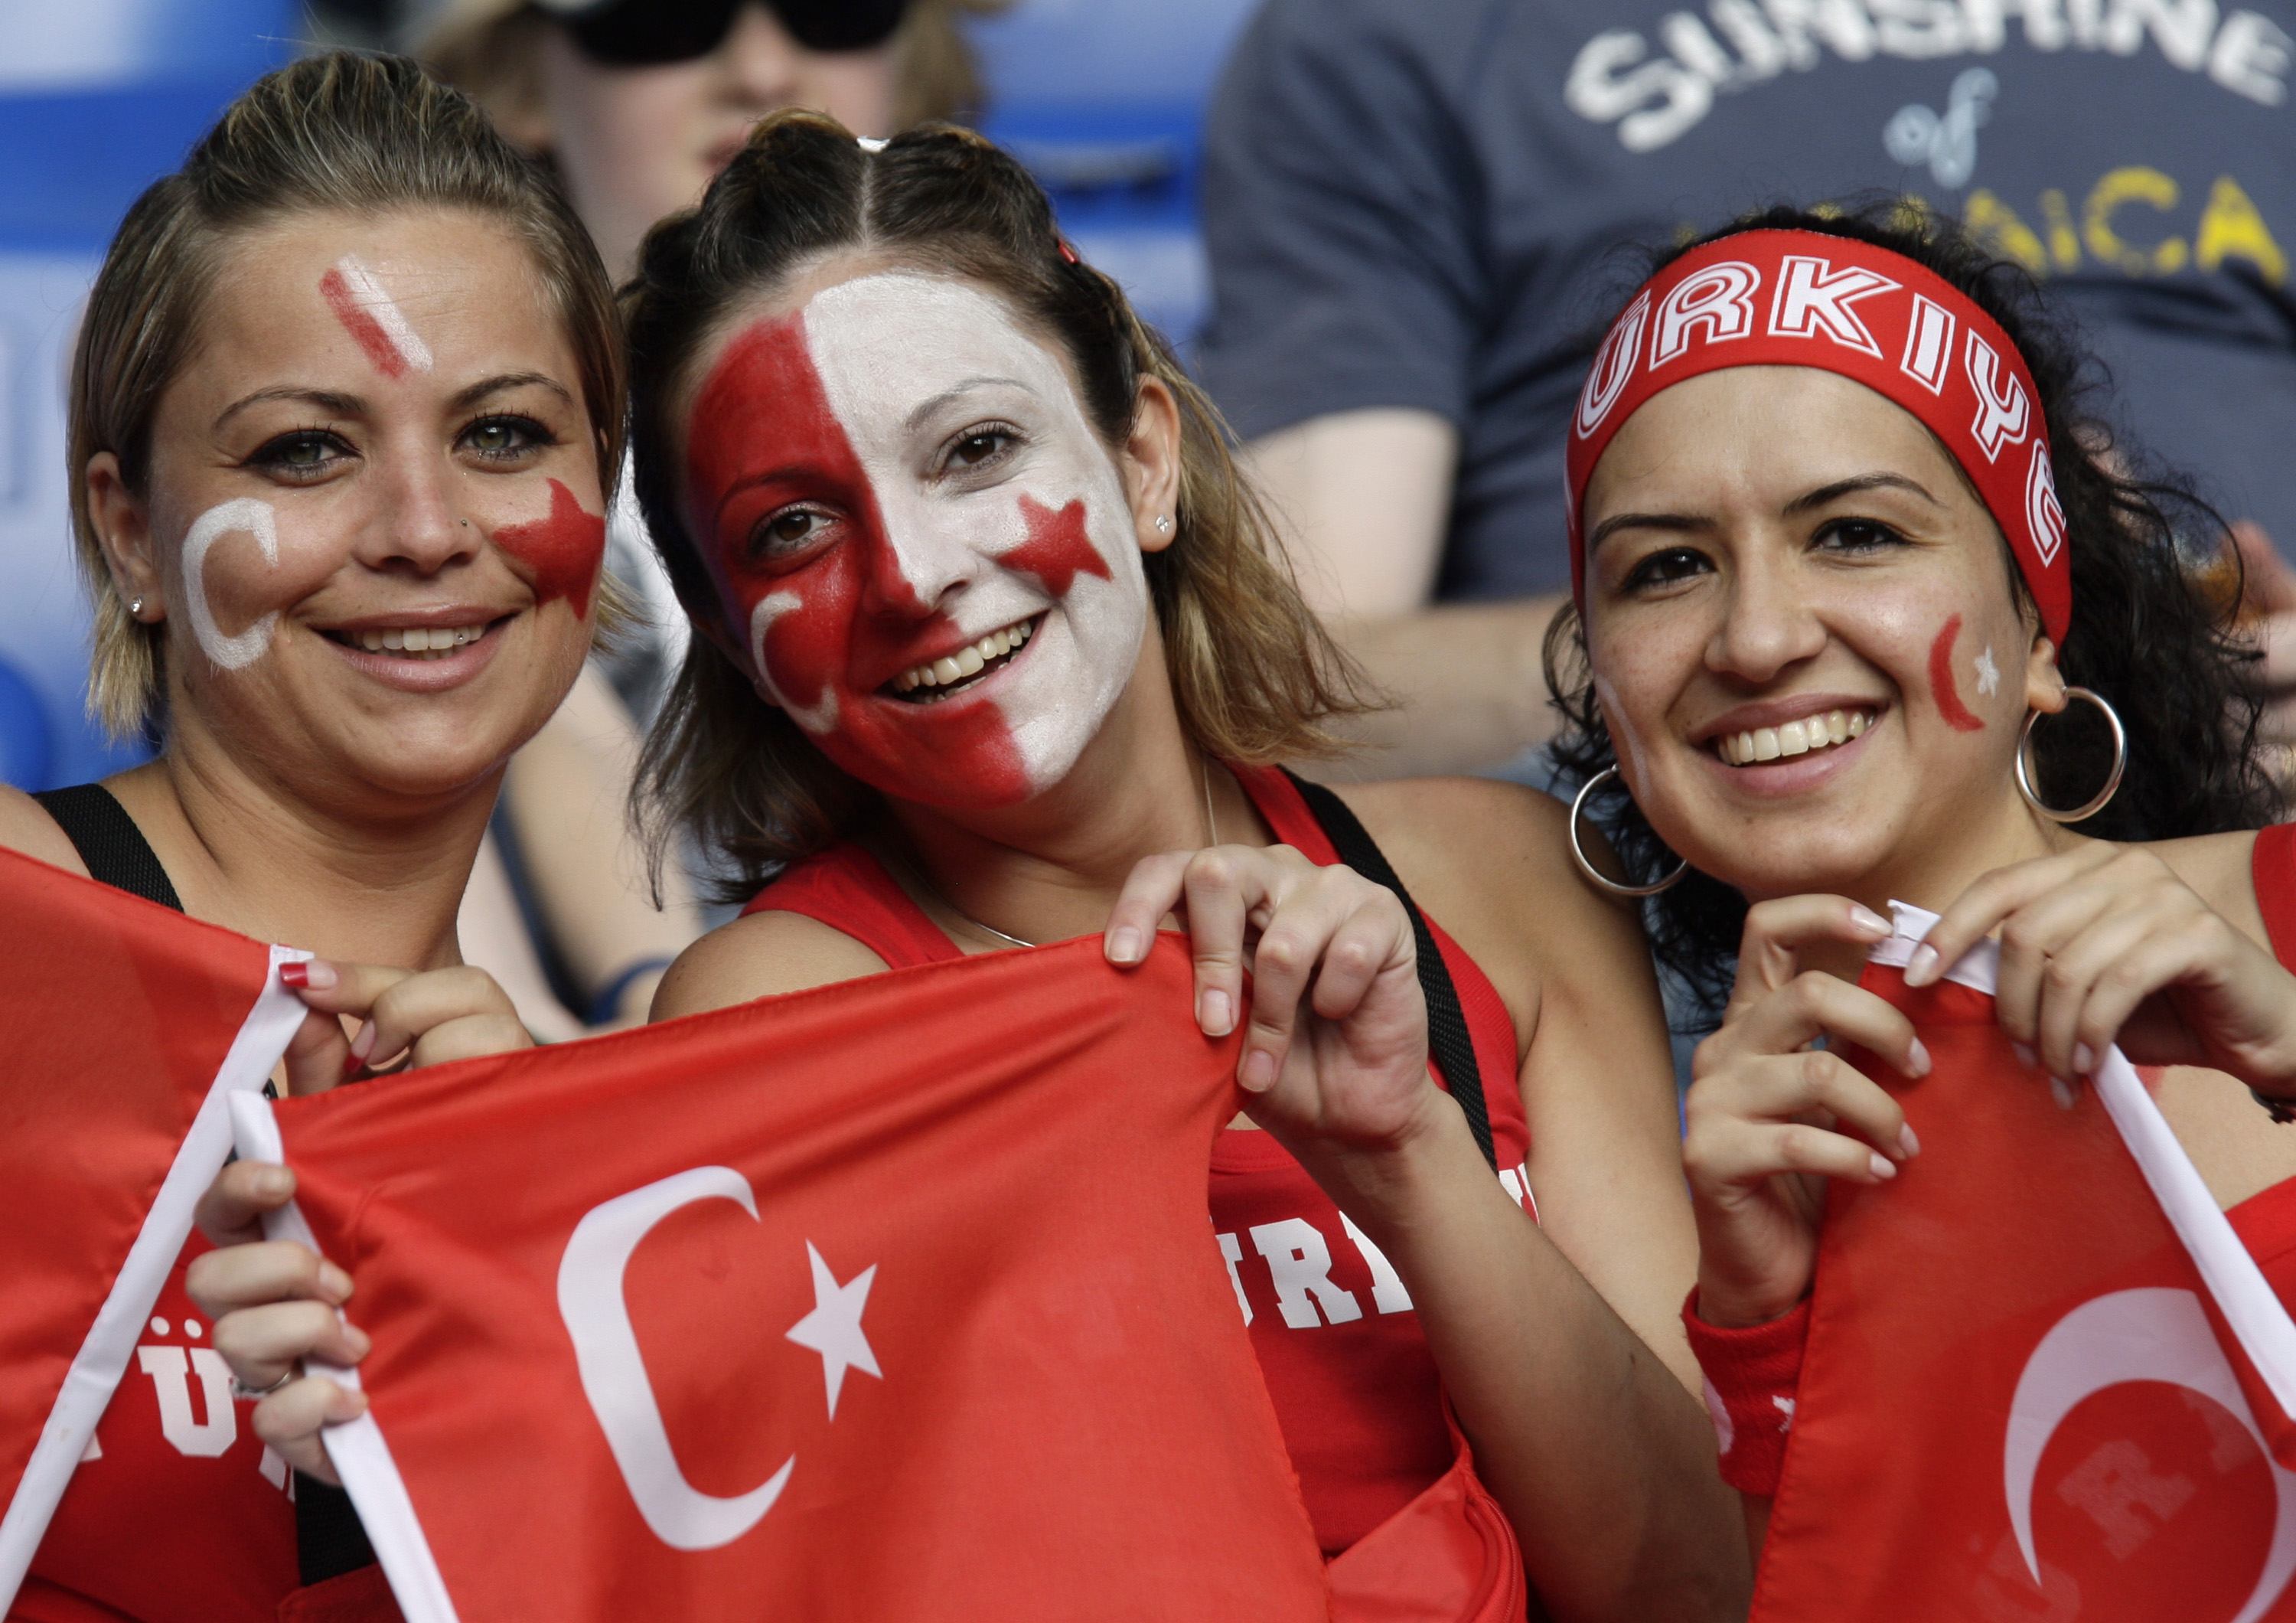 Euro 2008: Germany beats Turkey